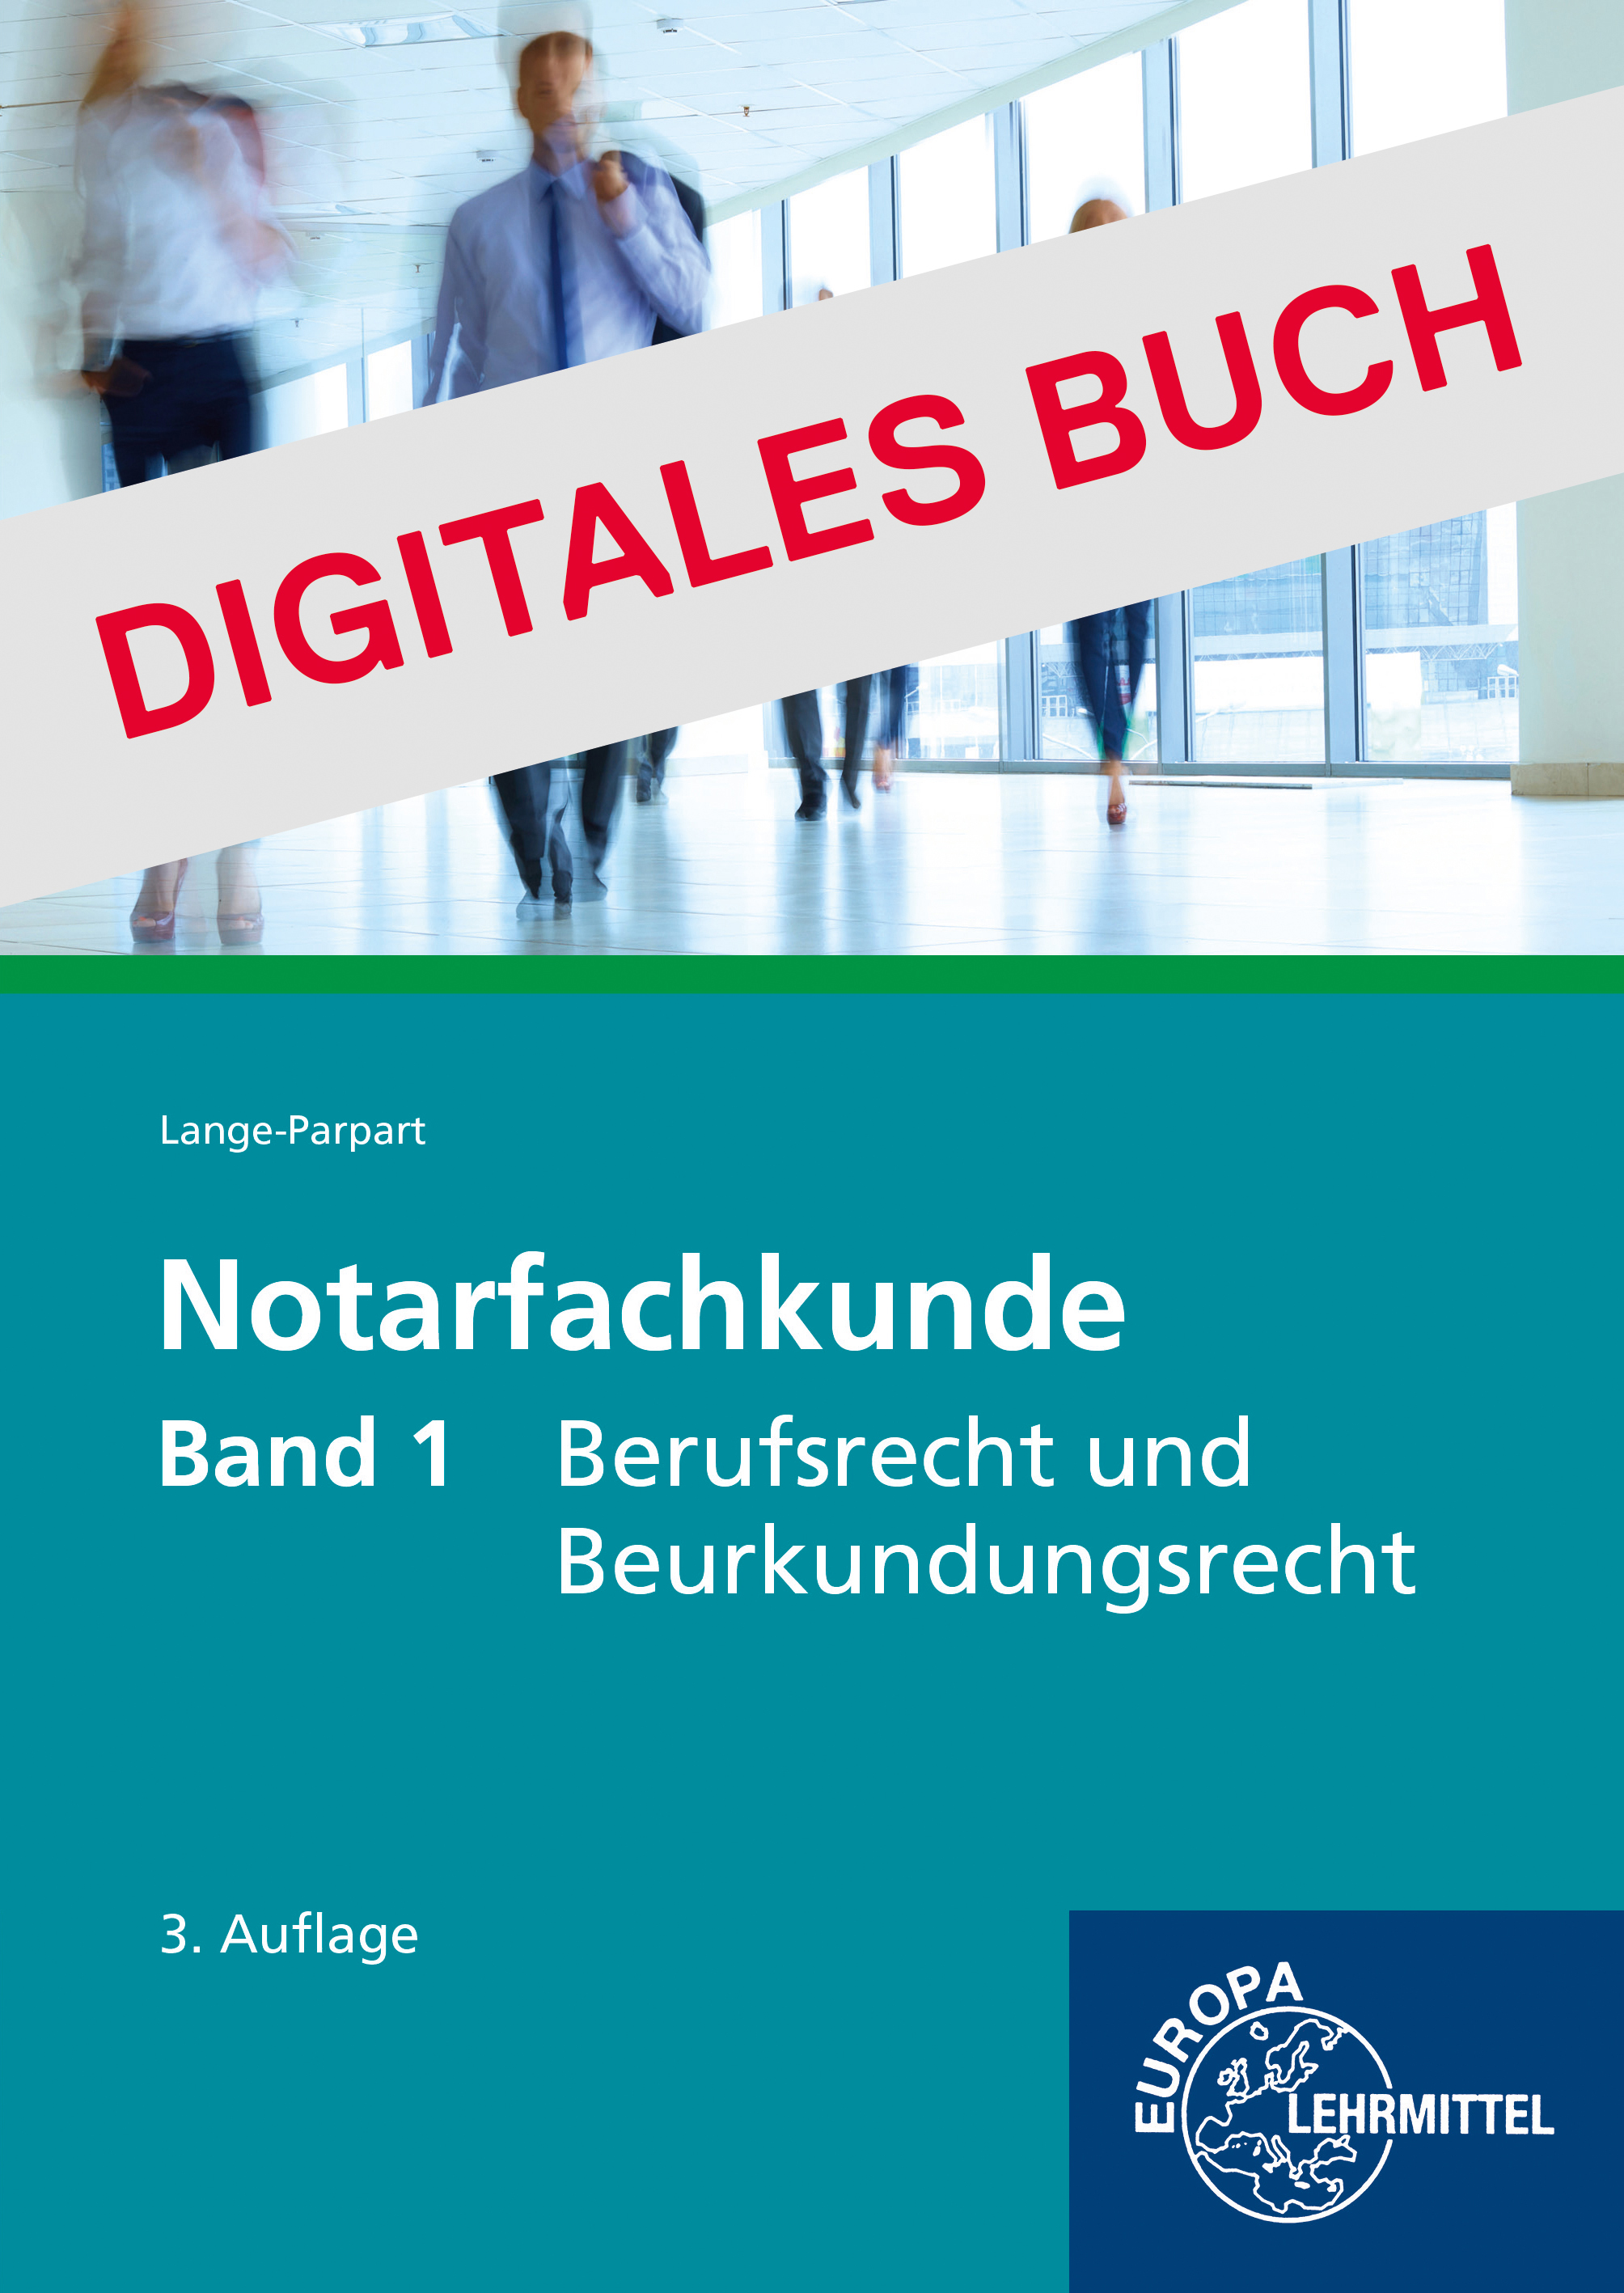 Notarfachkunde - Berufsrecht und Beurkundungsrecht Band 1 - Digitales Buch